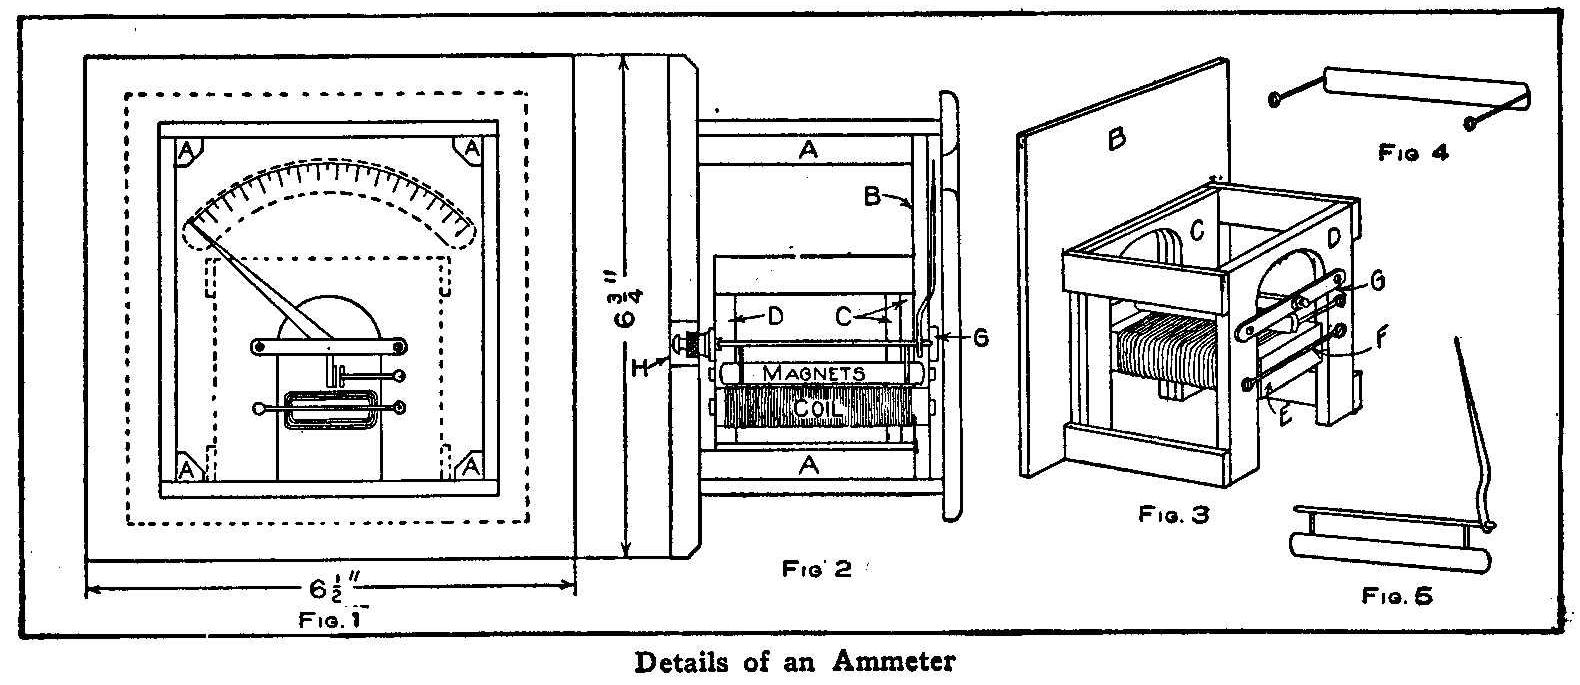 Details of an Ammeter